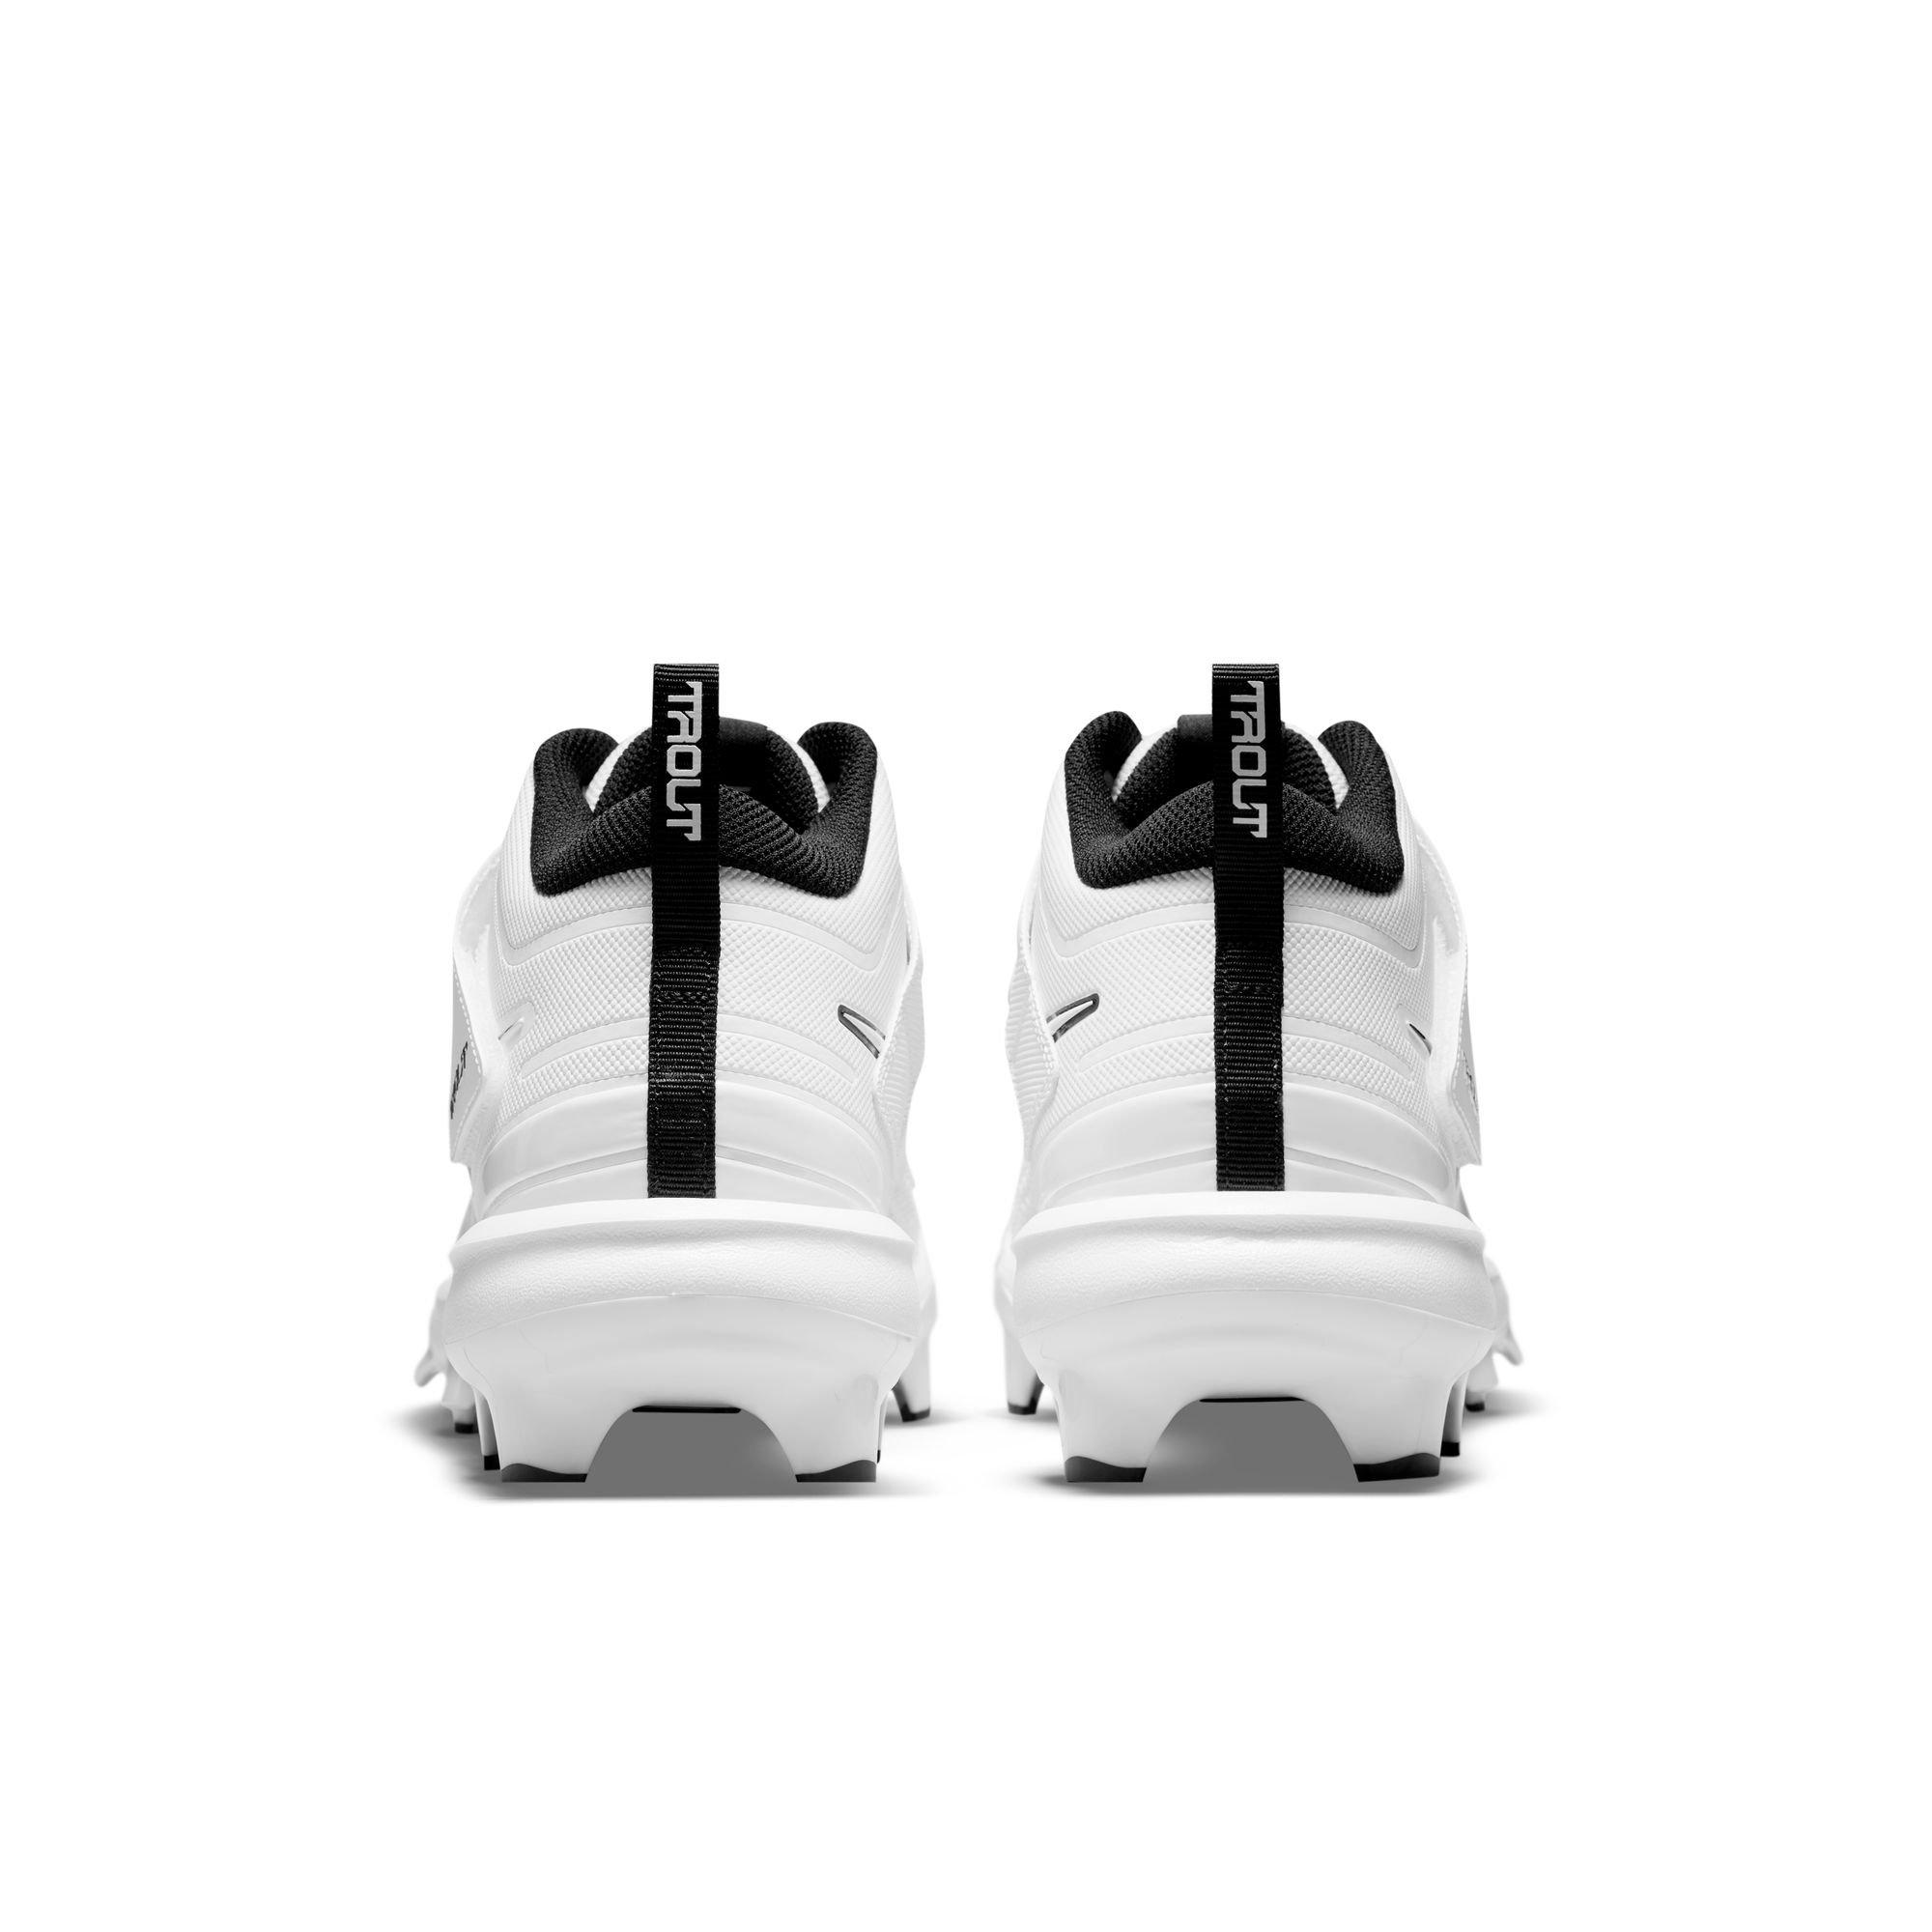 Nike Force Trout 7 Pro MCS White/Black Men's Baseball Cleat - Hibbett